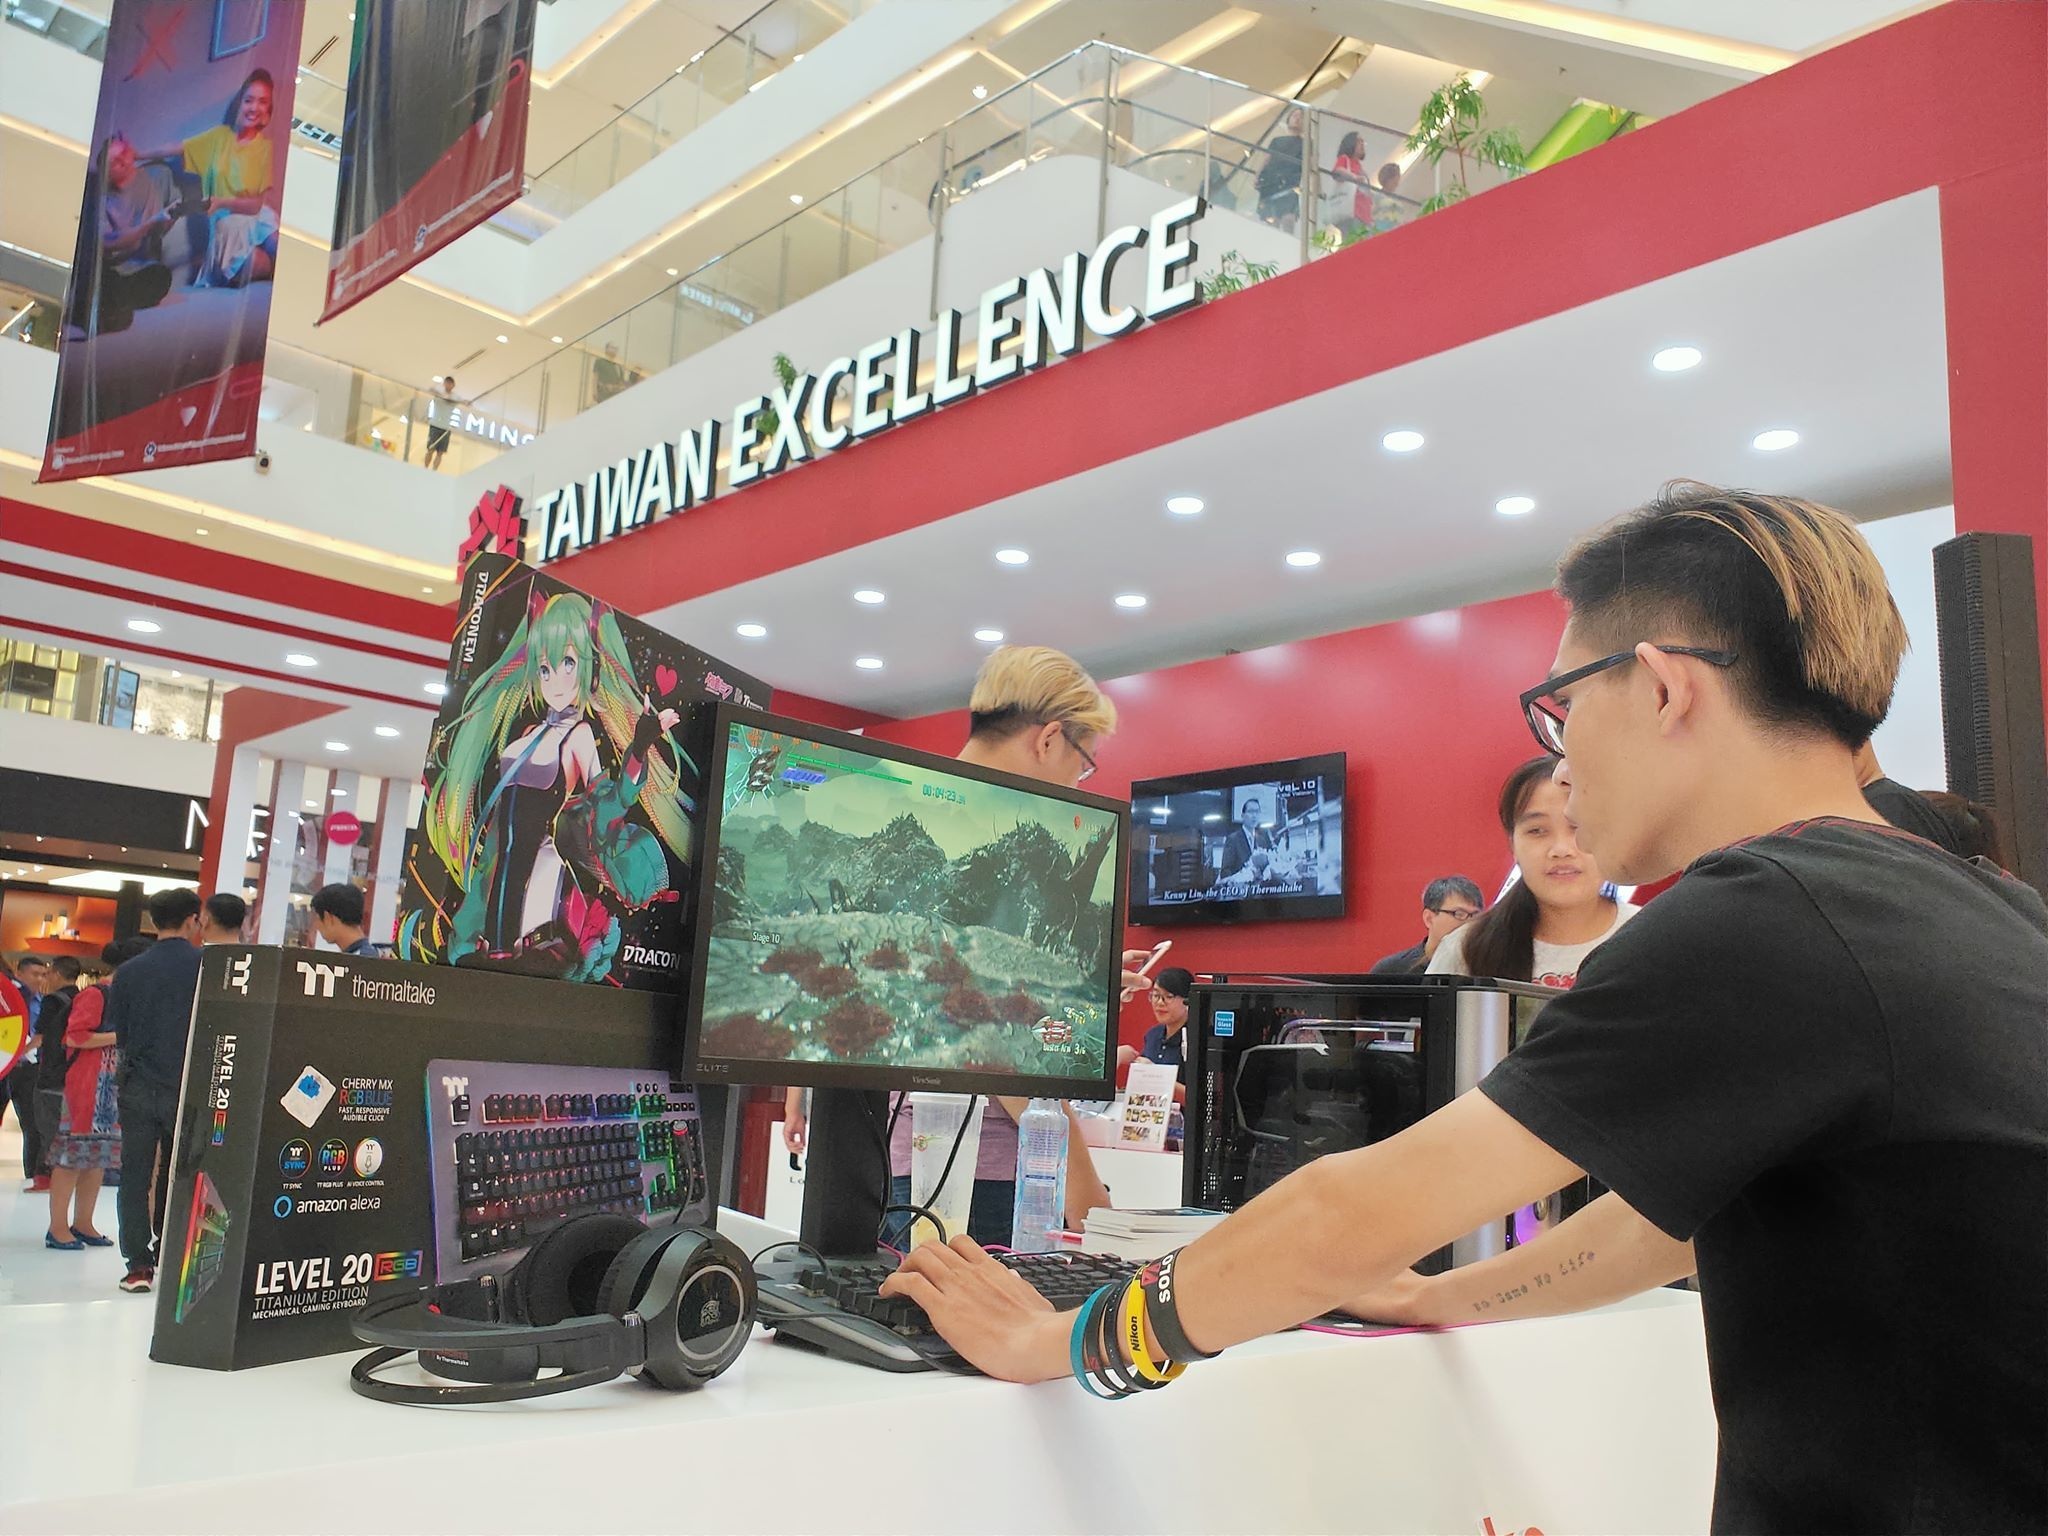 Taiwan Excellence trình diễn loạt sản phẩm nhắm tới game thủ độc đáo tại Việt Nam